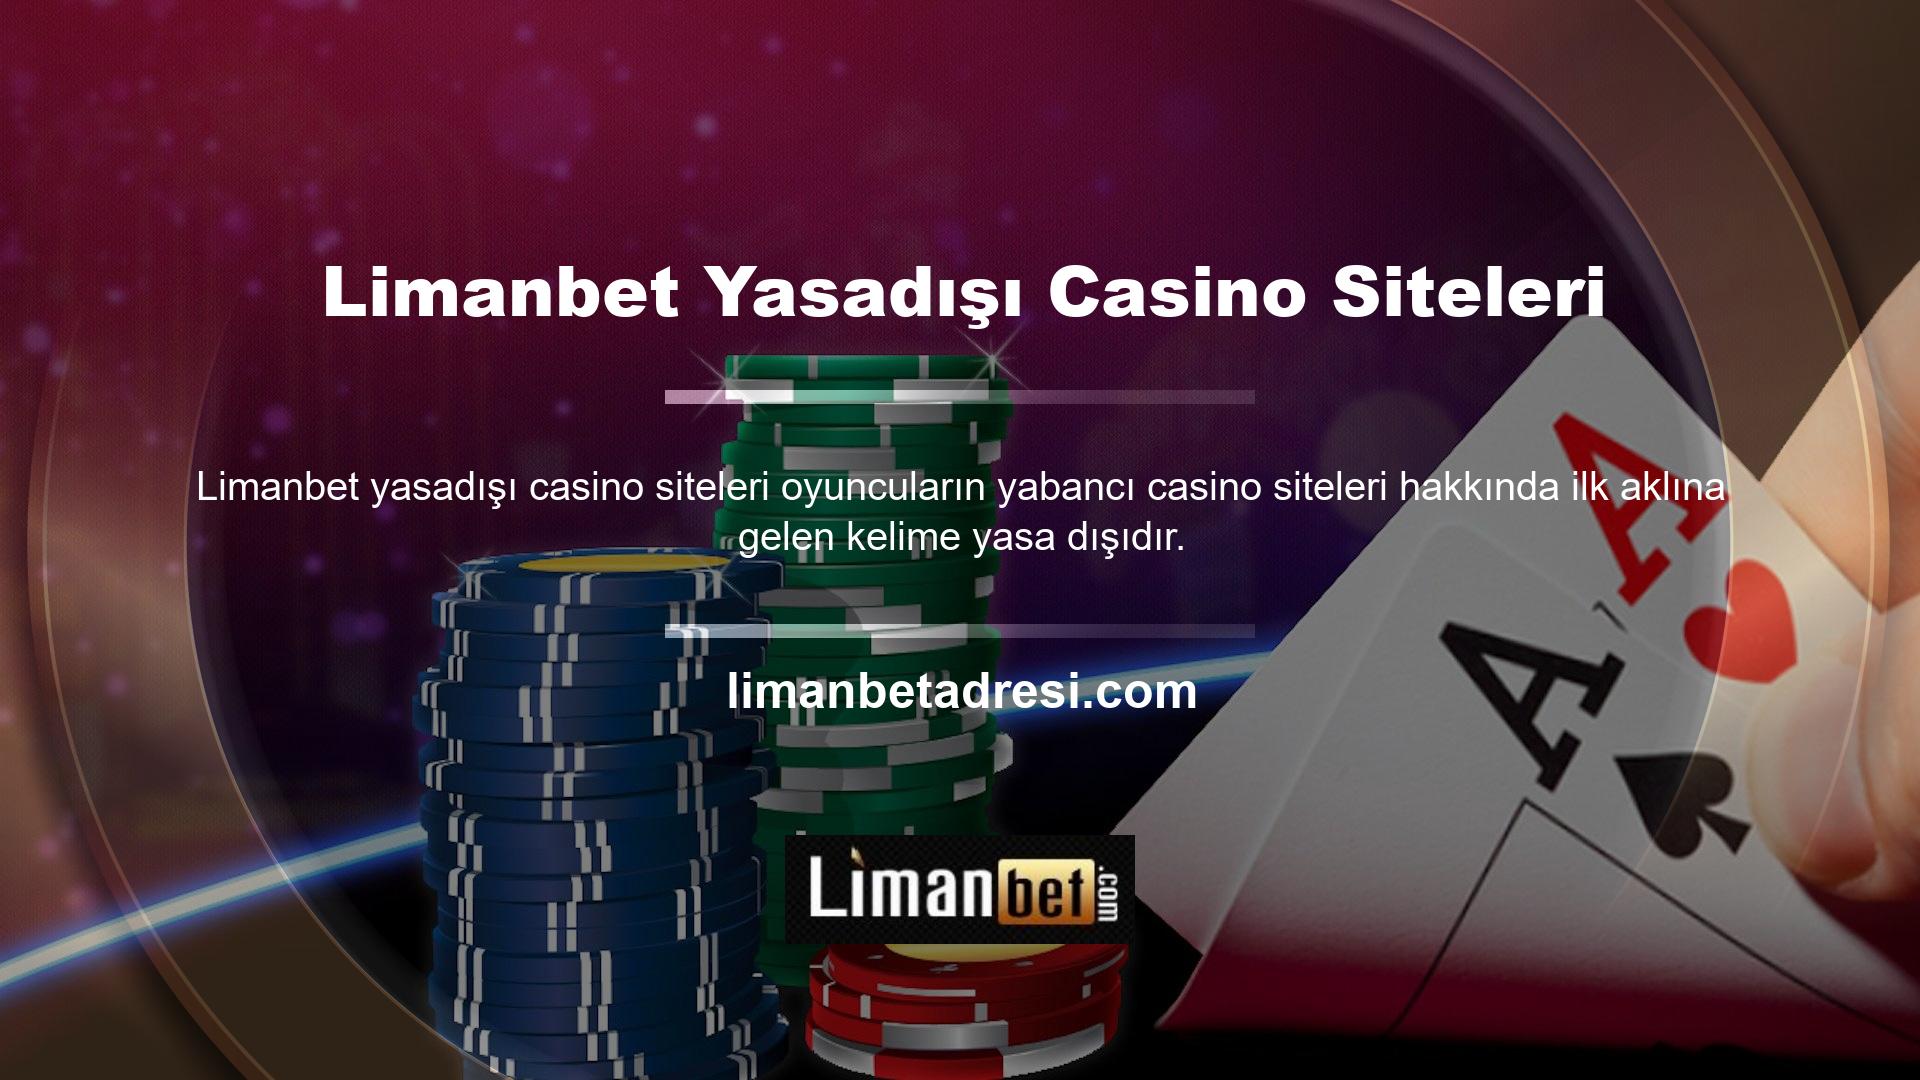 ? Yasadışı casino sitelerinin alaka düzeyine ilişkin soru işaretleri